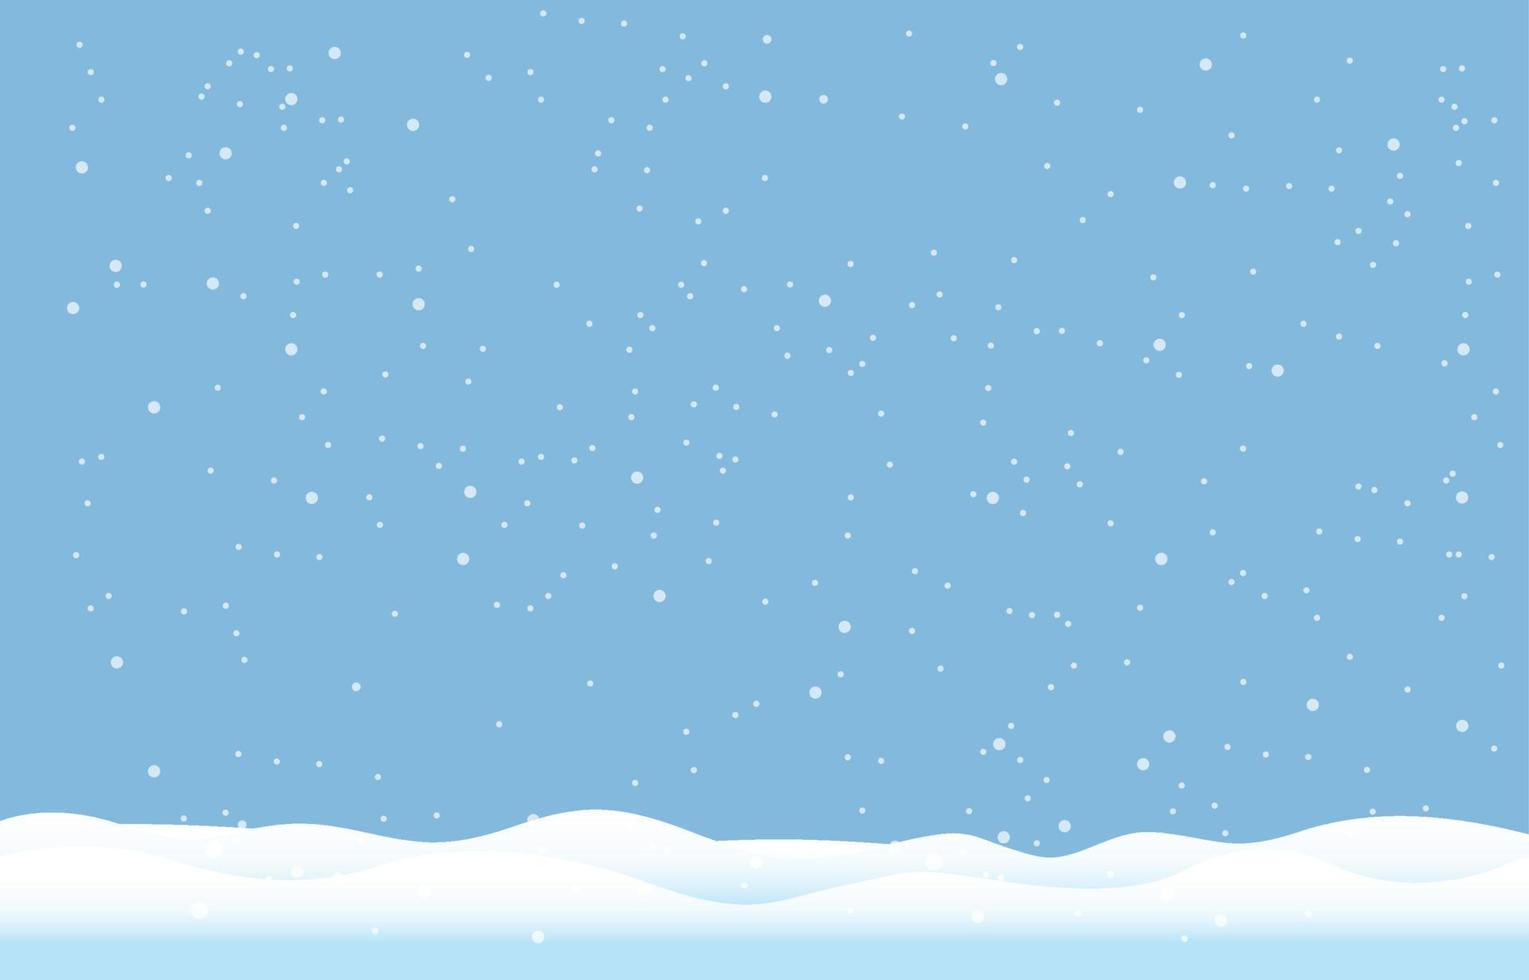 fiocchi di neve e sfondo invernale, paesaggio invernale, disegno vettoriale